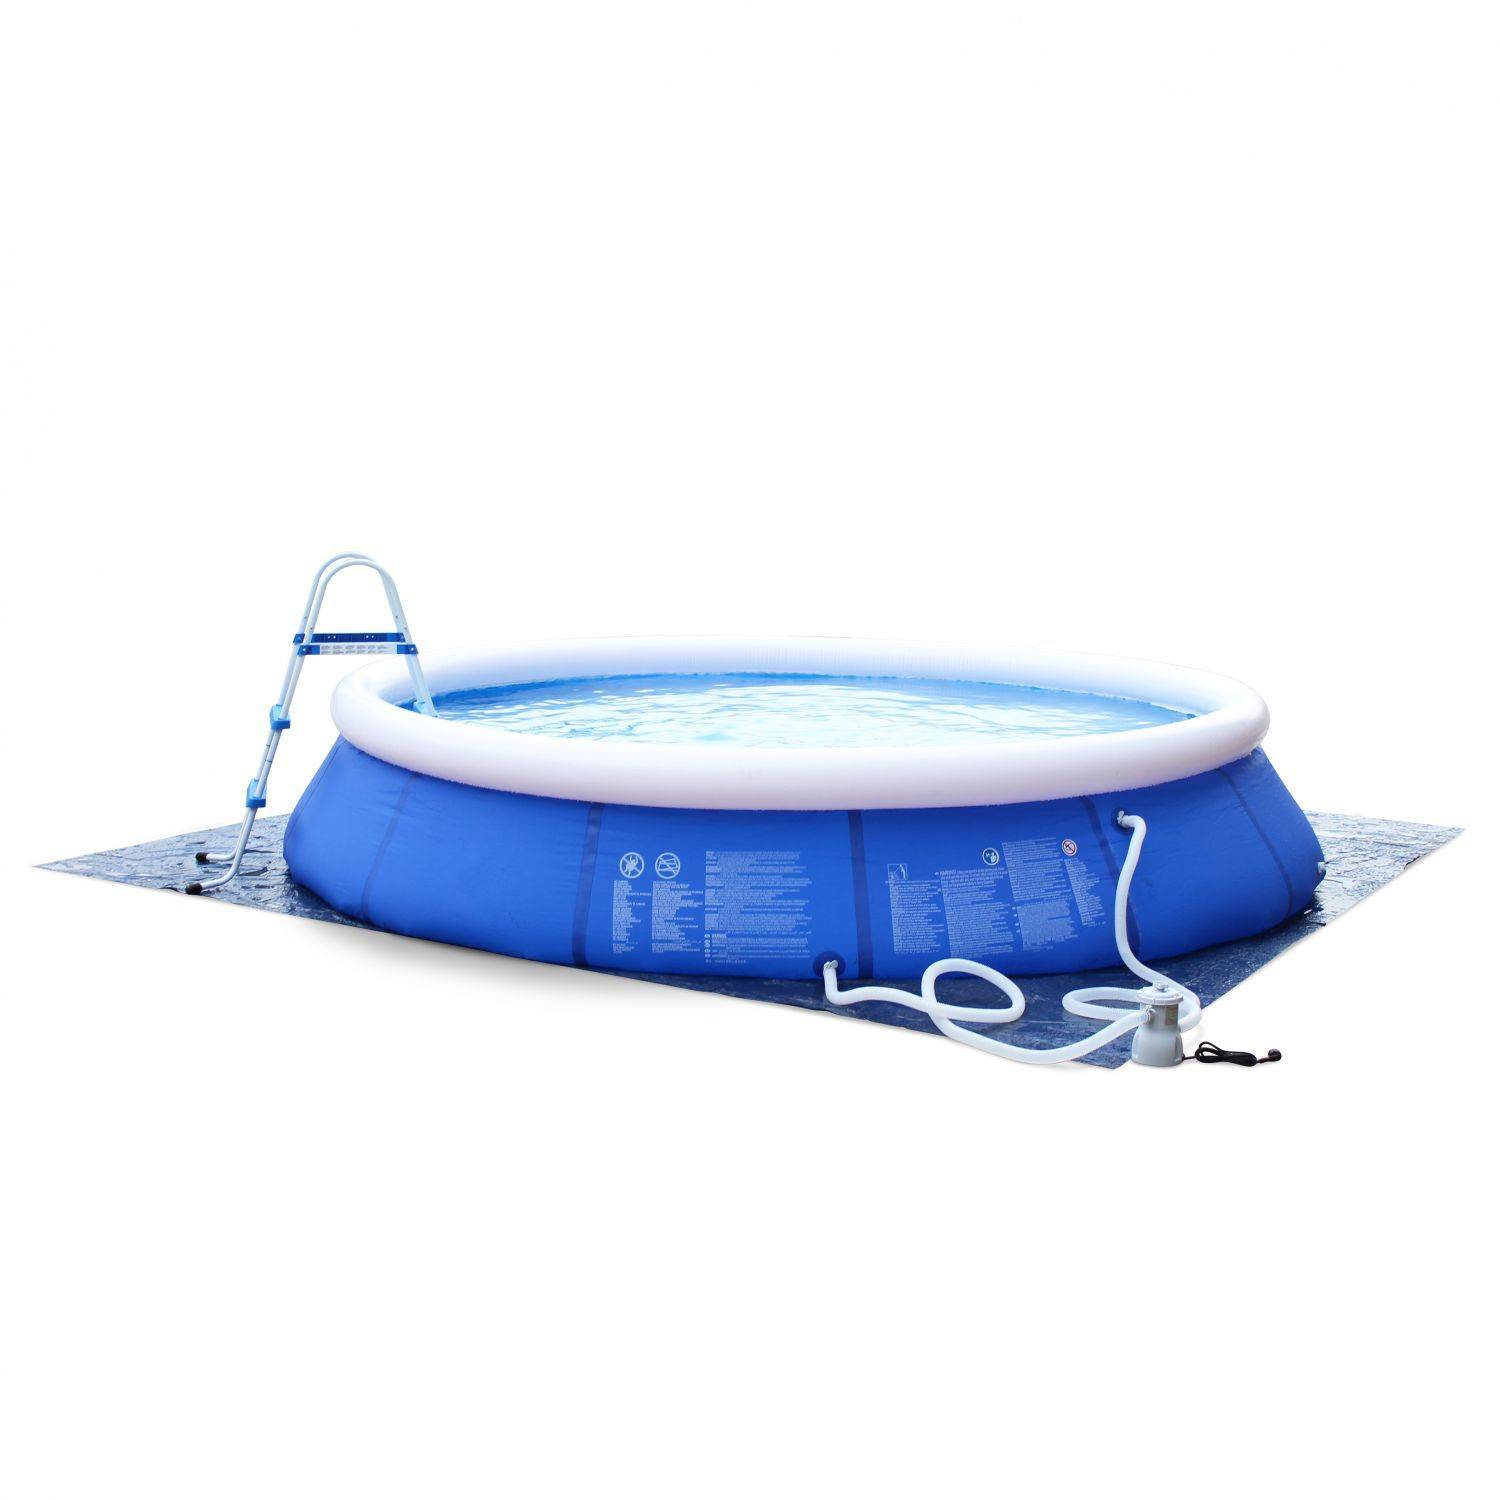 Kit piscine Cristal gonflable bleue autoportante ronde Ø420x84cm avec pompe de filtration, bâche de protection, tapis de sol et échelle Photo2